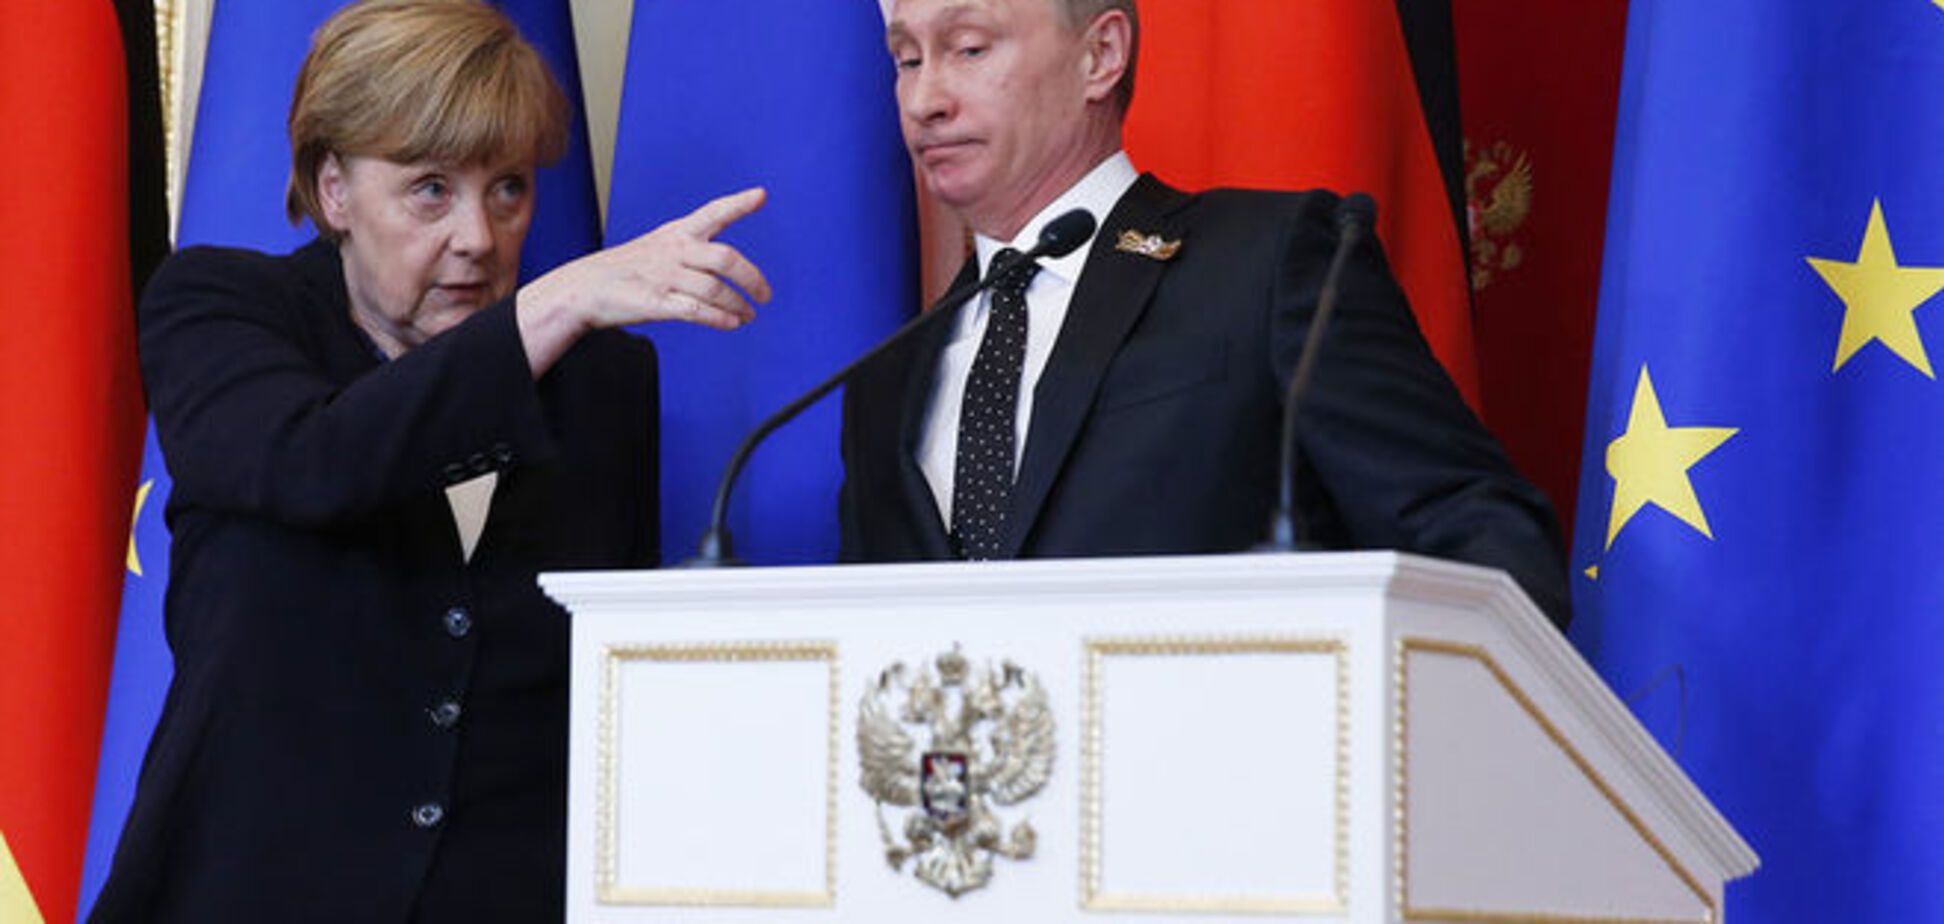 Европа в сговоре с Россией